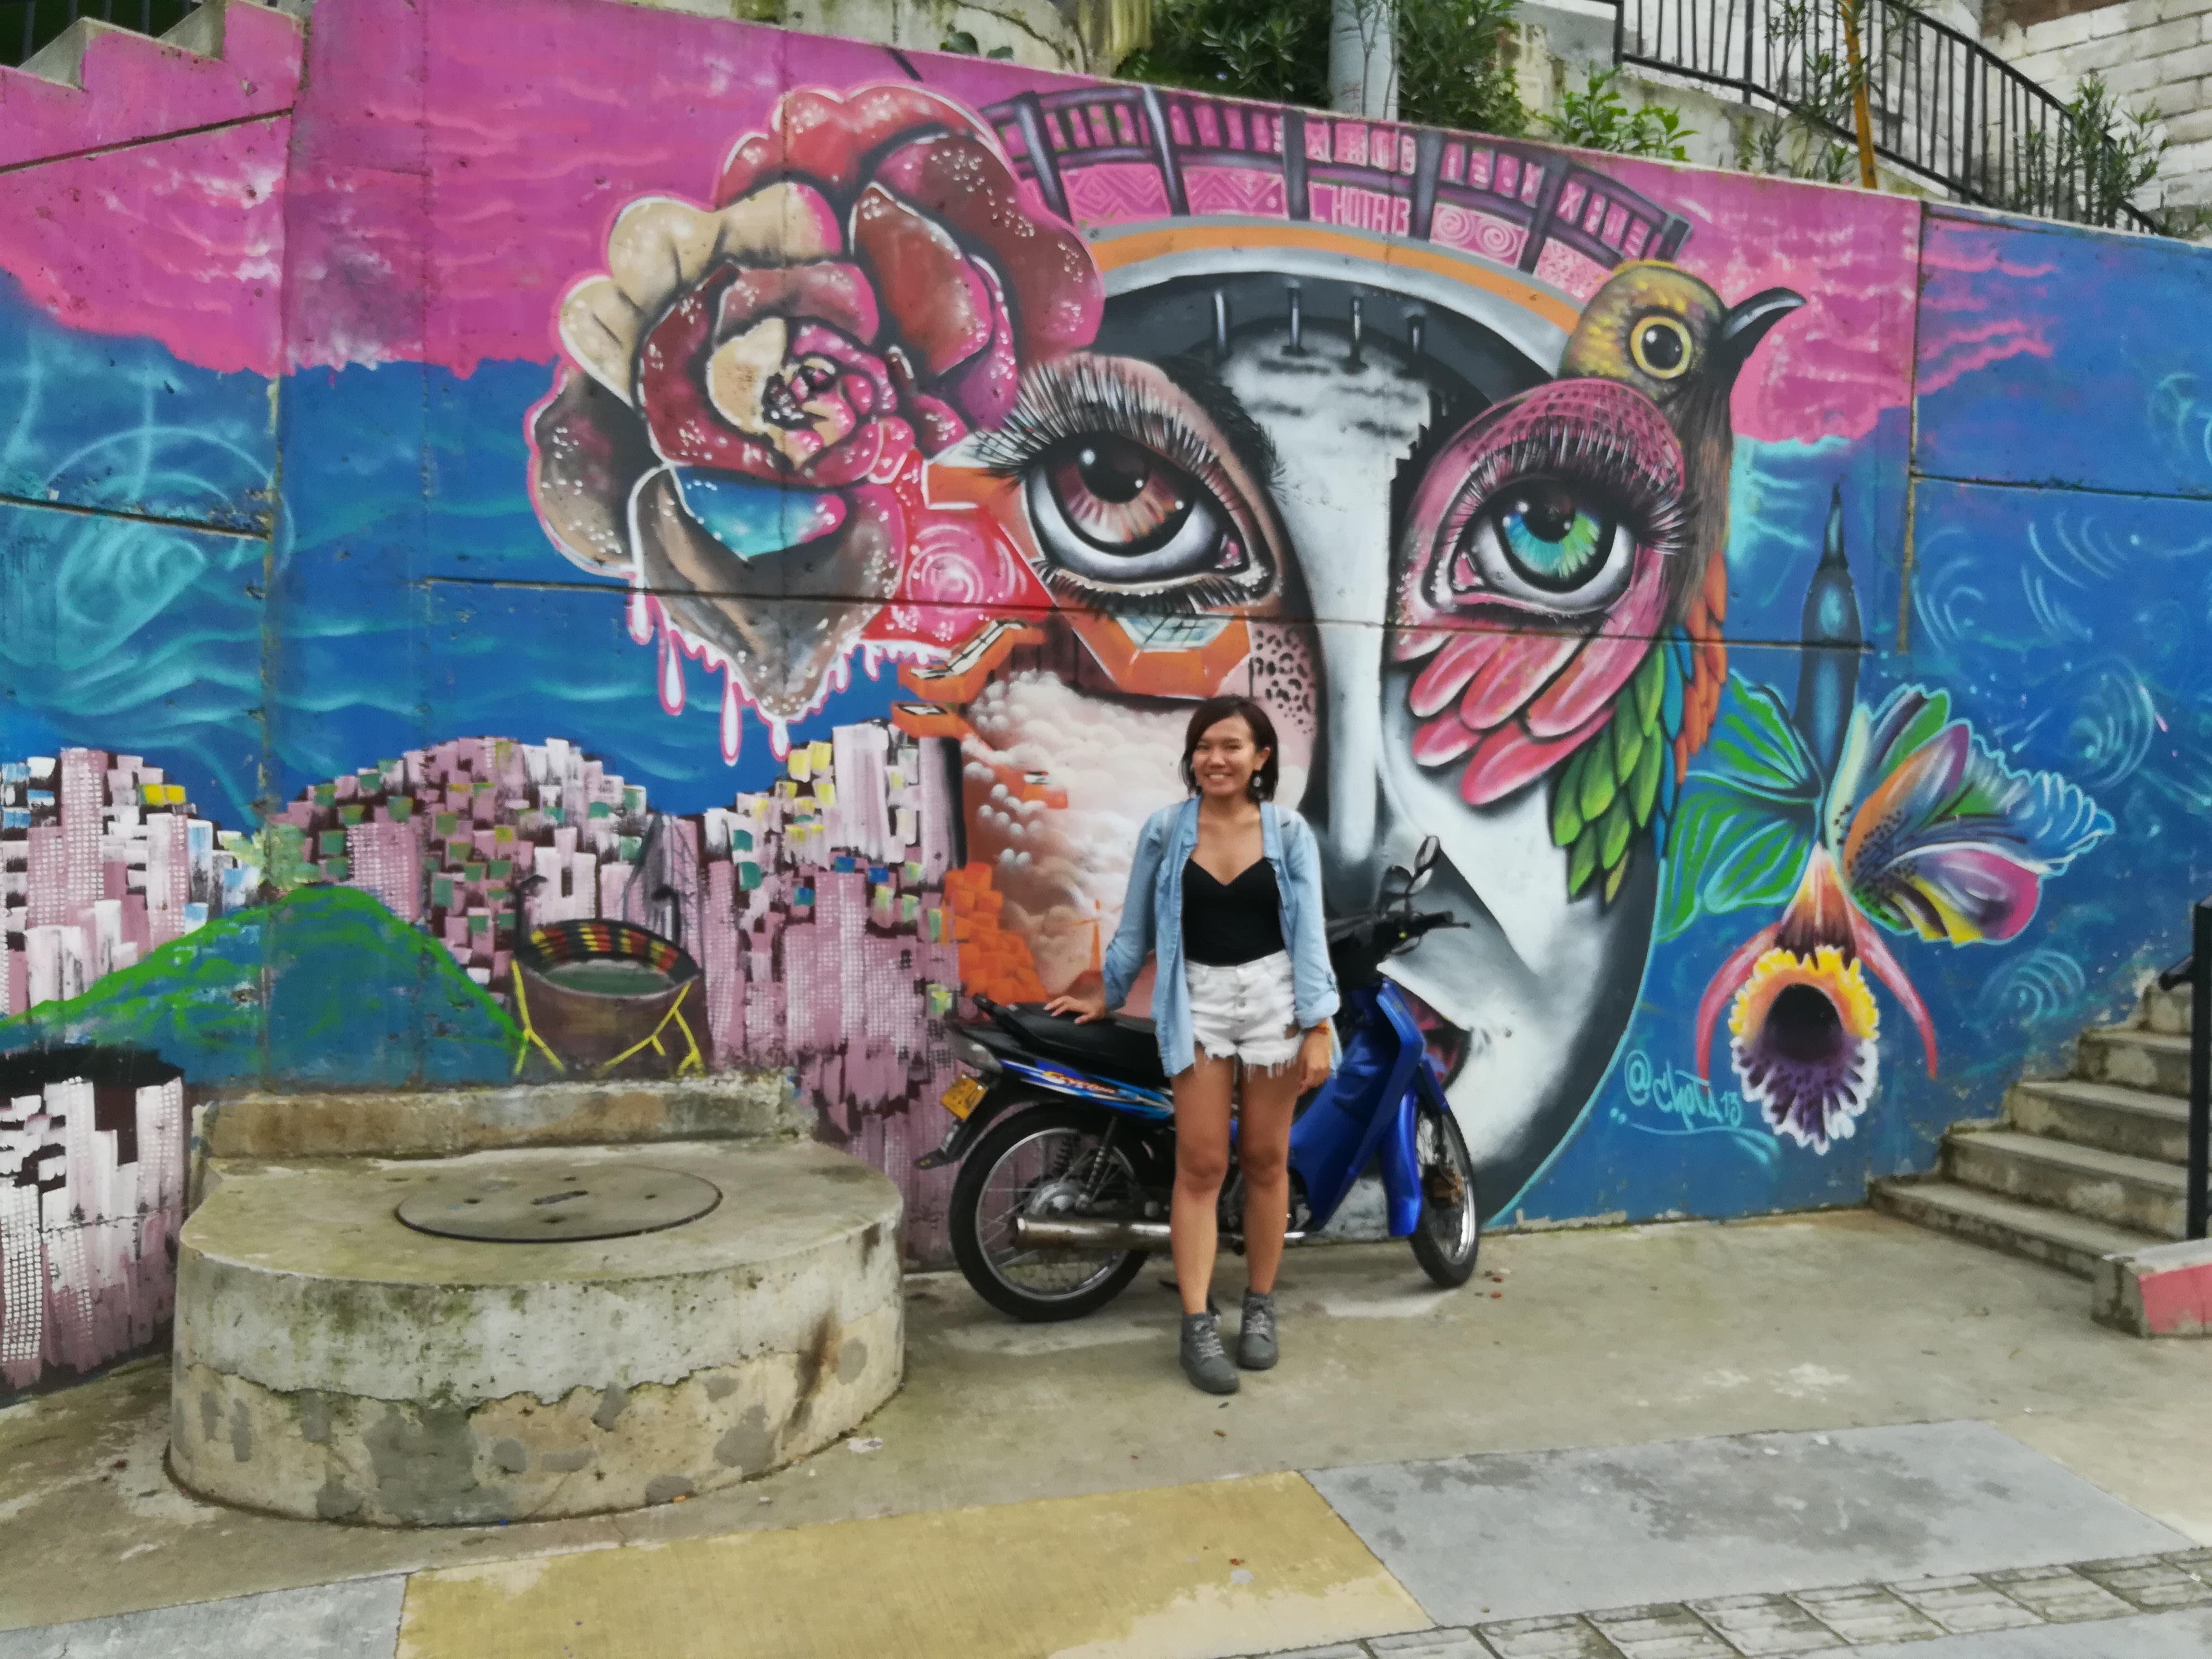 【南美自助】被毒梟耽誤的城市「麥德林」 – 藝術與貧民窟只有一線之隔「Comuna13」